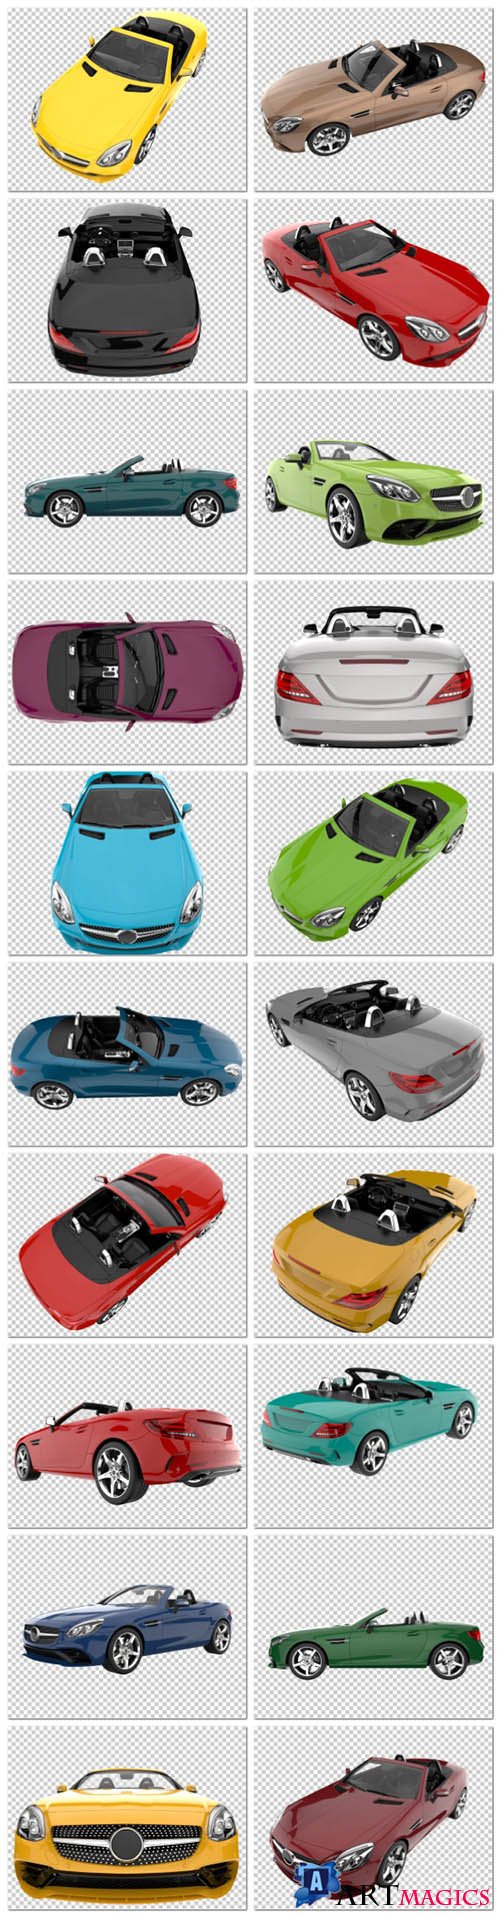 20 Sport car on transparent background, 3d rendering - illustration in psd vol 1